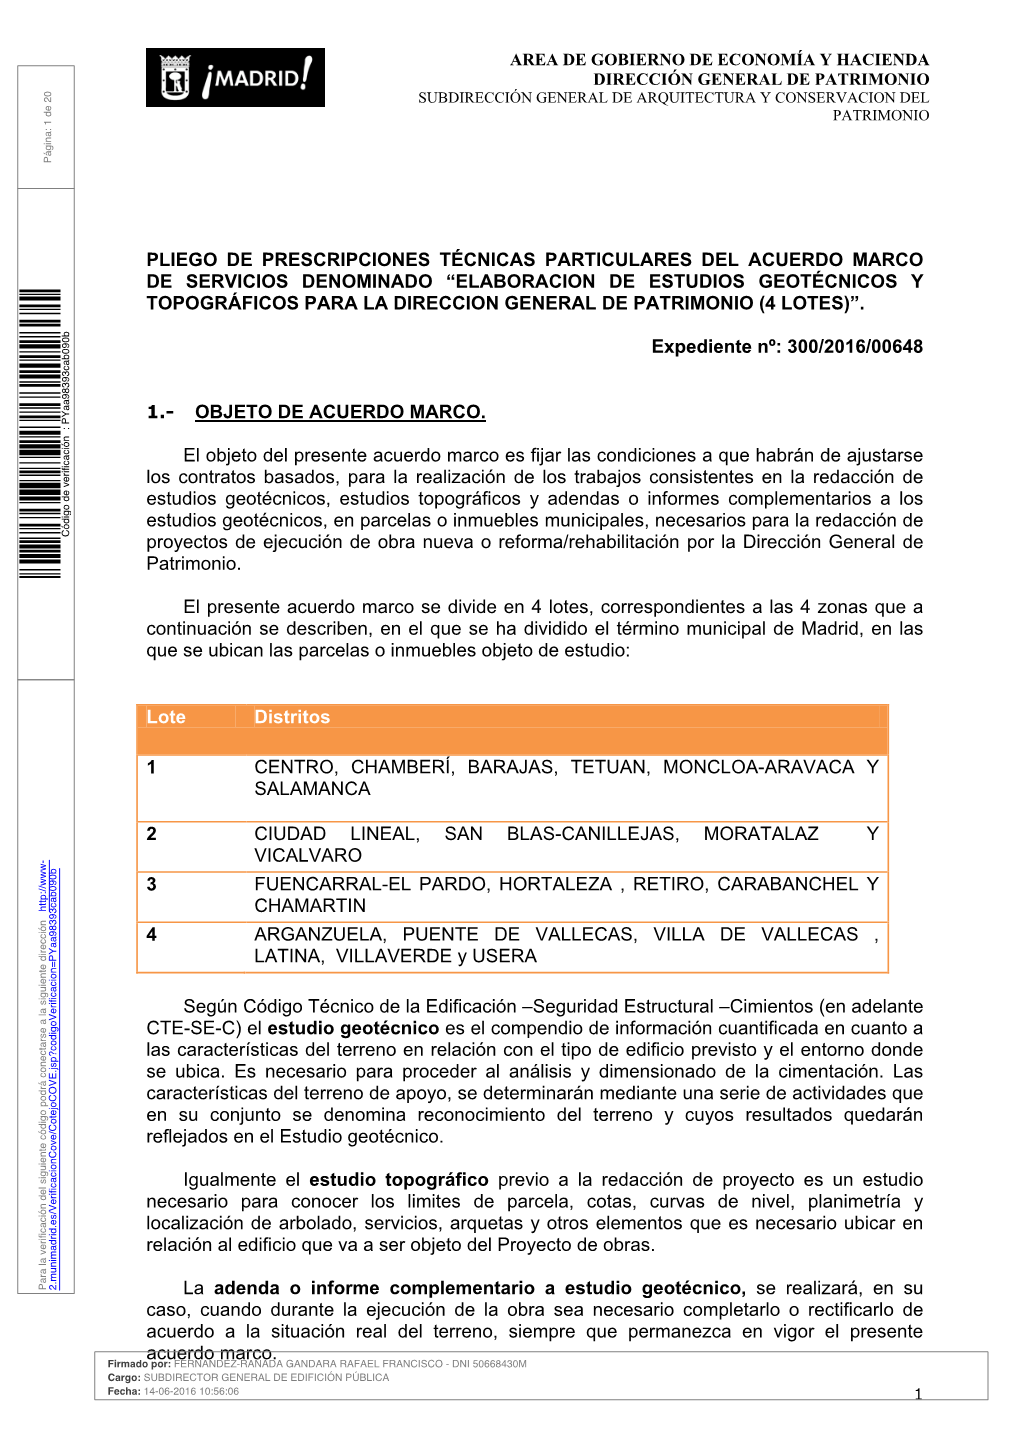 Contrato De Consultoria Y Asistencia Para El Estudio Sobre La Oferta Territorializada Del Mercado De Oficinas Y Loale